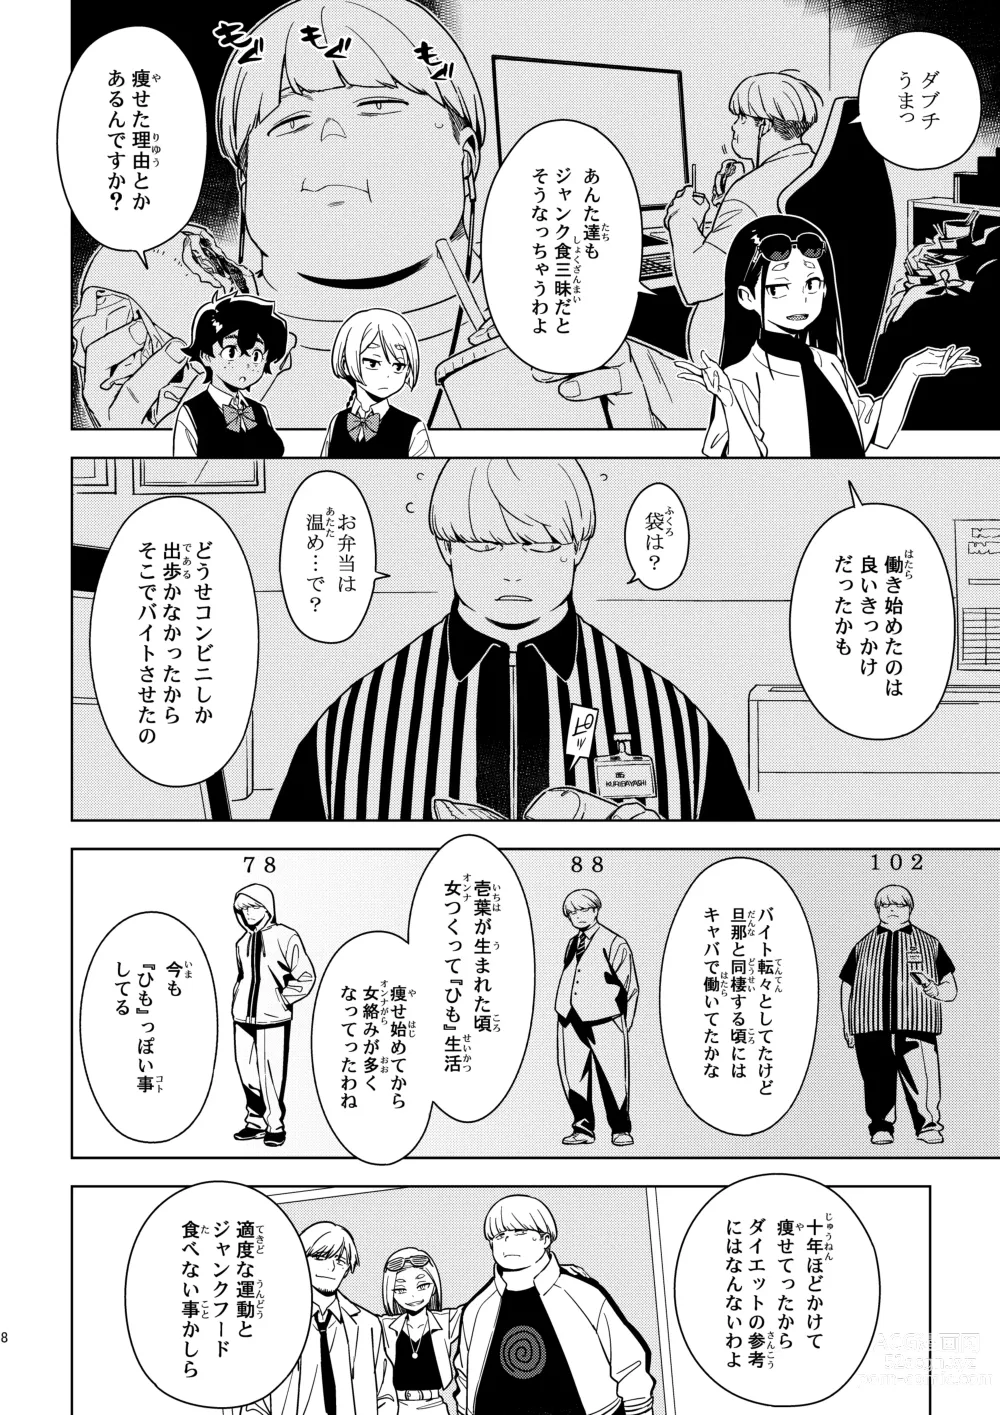 Page 7 of doujinshi Seiko